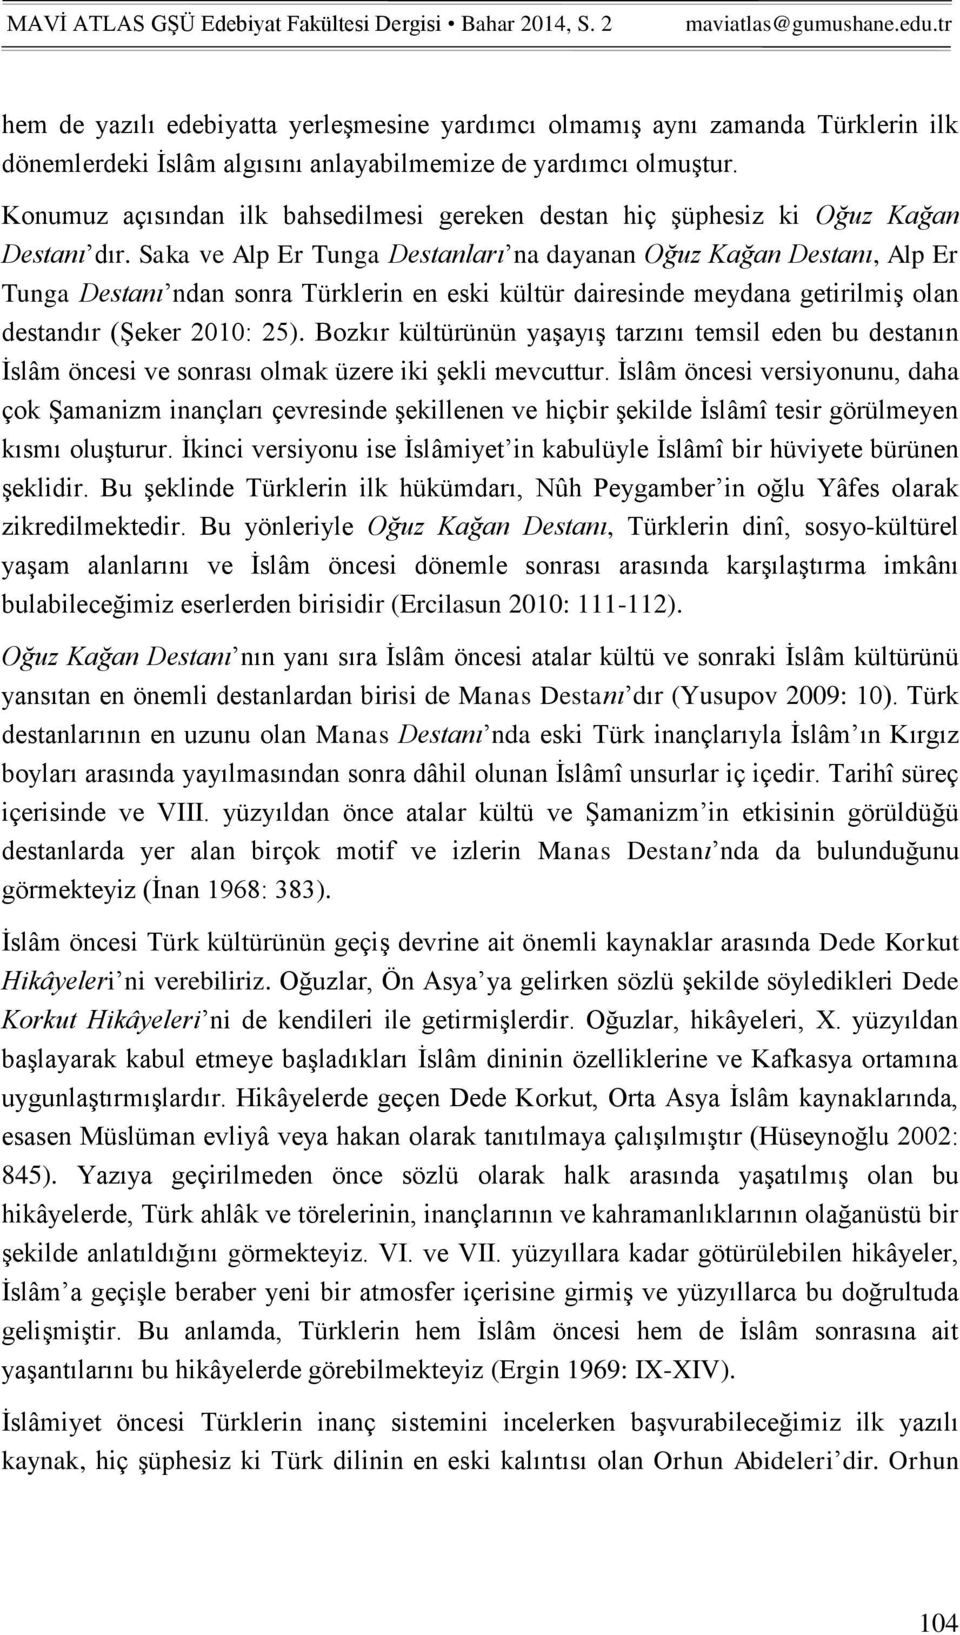 Saka ve Alp Er Tunga Destanları na dayanan Oğuz Kağan Destanı, Alp Er Tunga Destanı ndan sonra Türklerin en eski kültür dairesinde meydana getirilmiş olan destandır (Şeker 2010: 25).